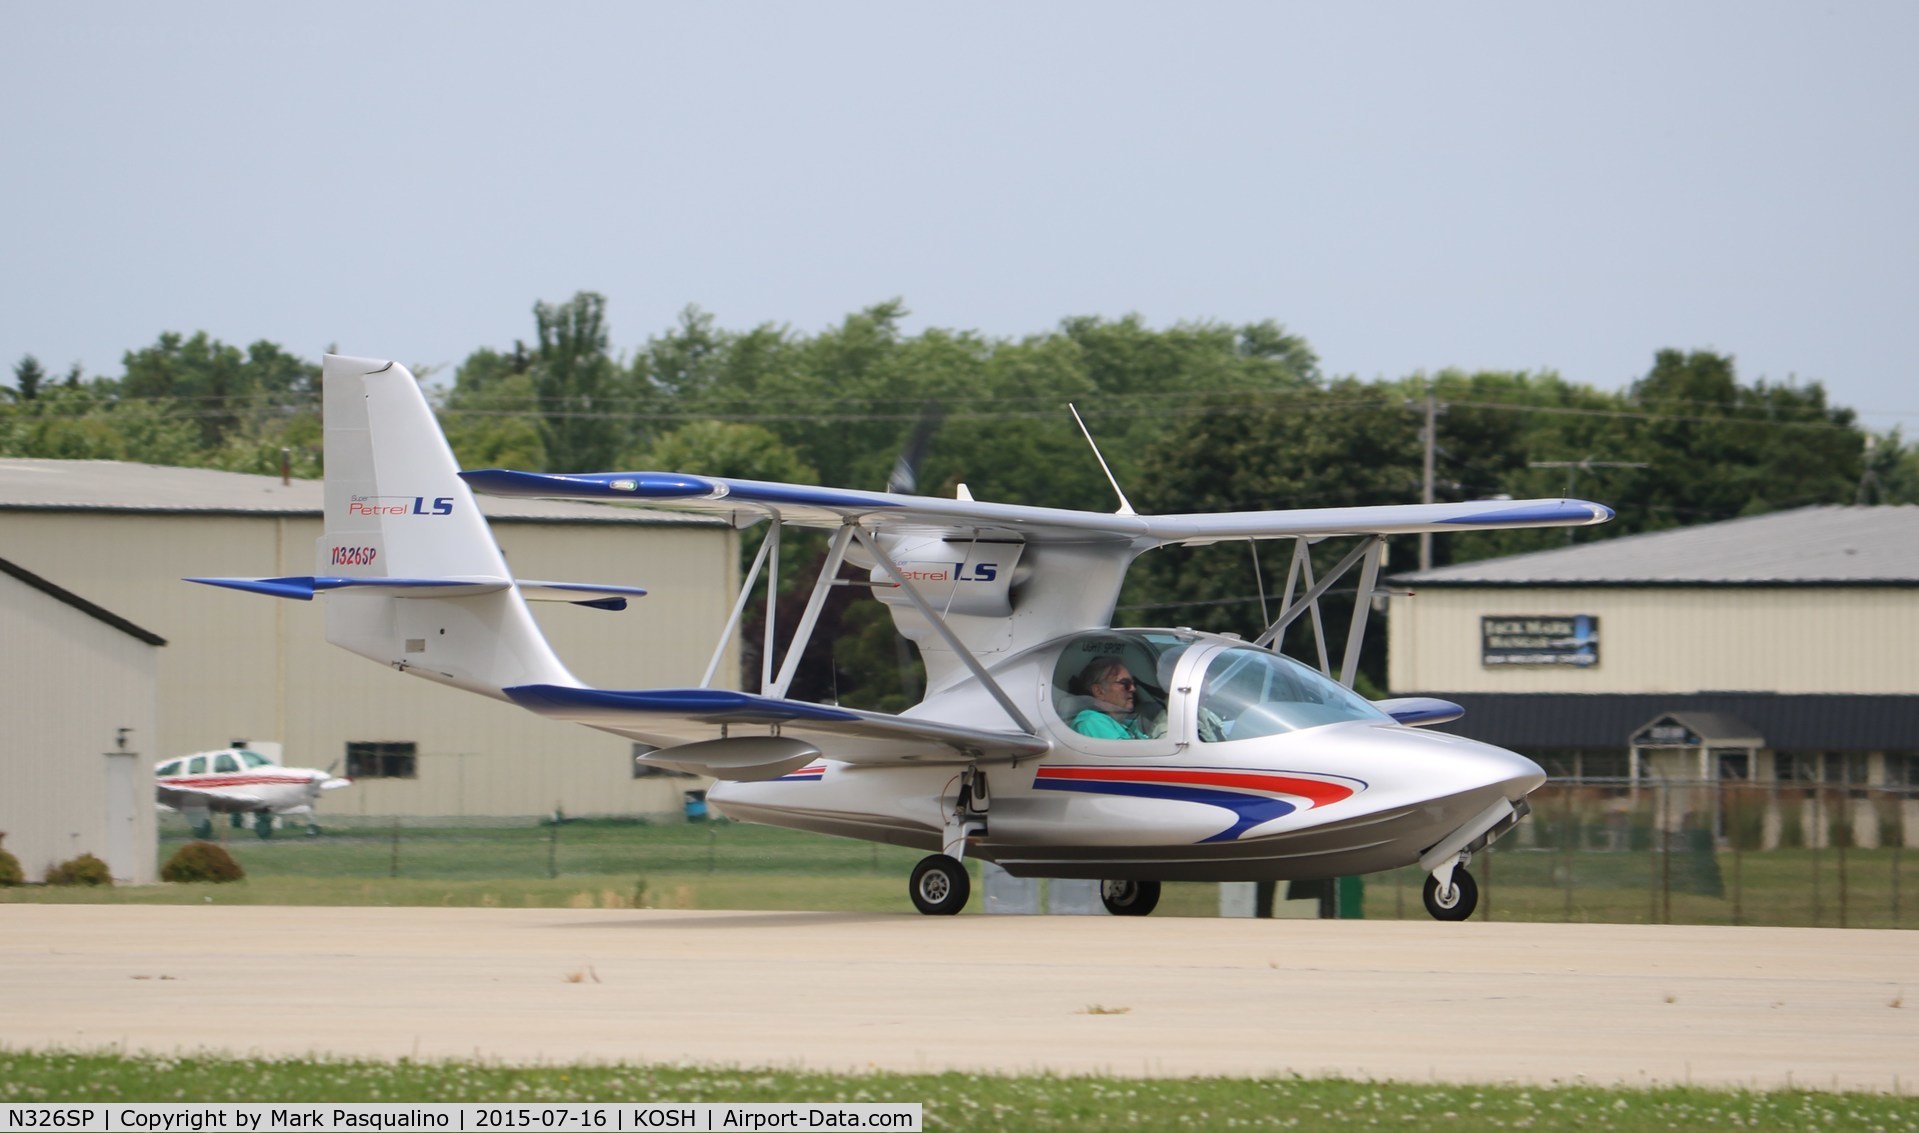 N326SP, 2014 EDRA Aeronautica Super Petrel LS C/N S0326, Super Petrel LS